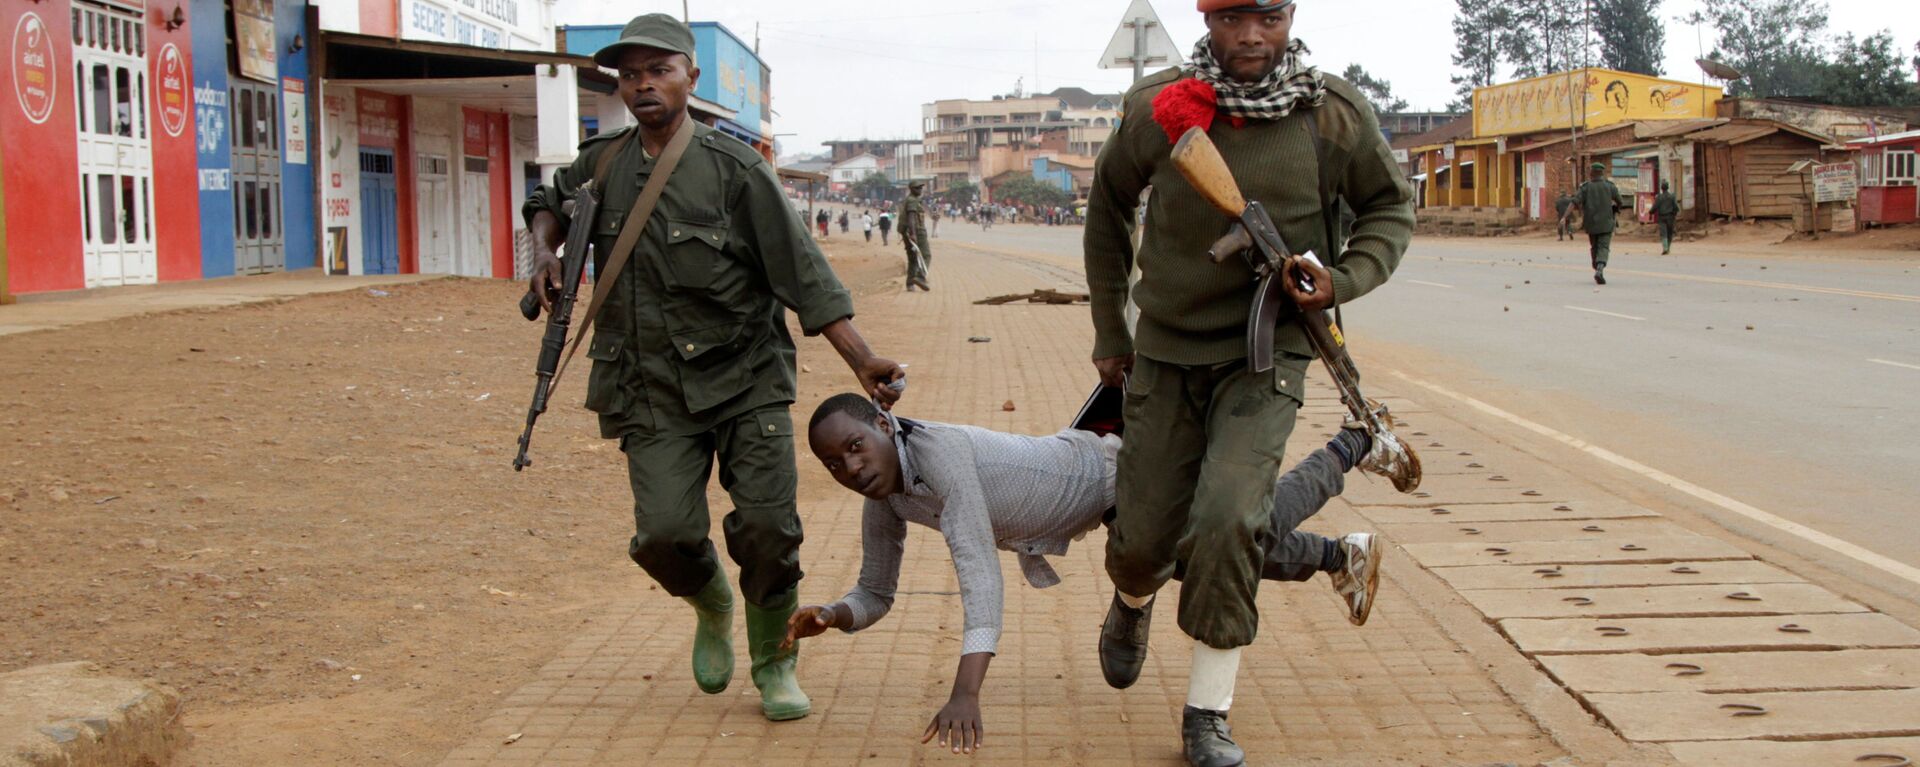 جنديان يعتقلان مدنياً شارك في احتجاجات مناهضة لفشل الحكومة في وقف أعمالالقتل والعنف (المبنية على العرق) في بلدة بوتيمبو، جمهورية الكونغو الديموقراطية، 24 أغسطس/ آب 2016 - سبوتنيك عربي, 1920, 14.02.2021